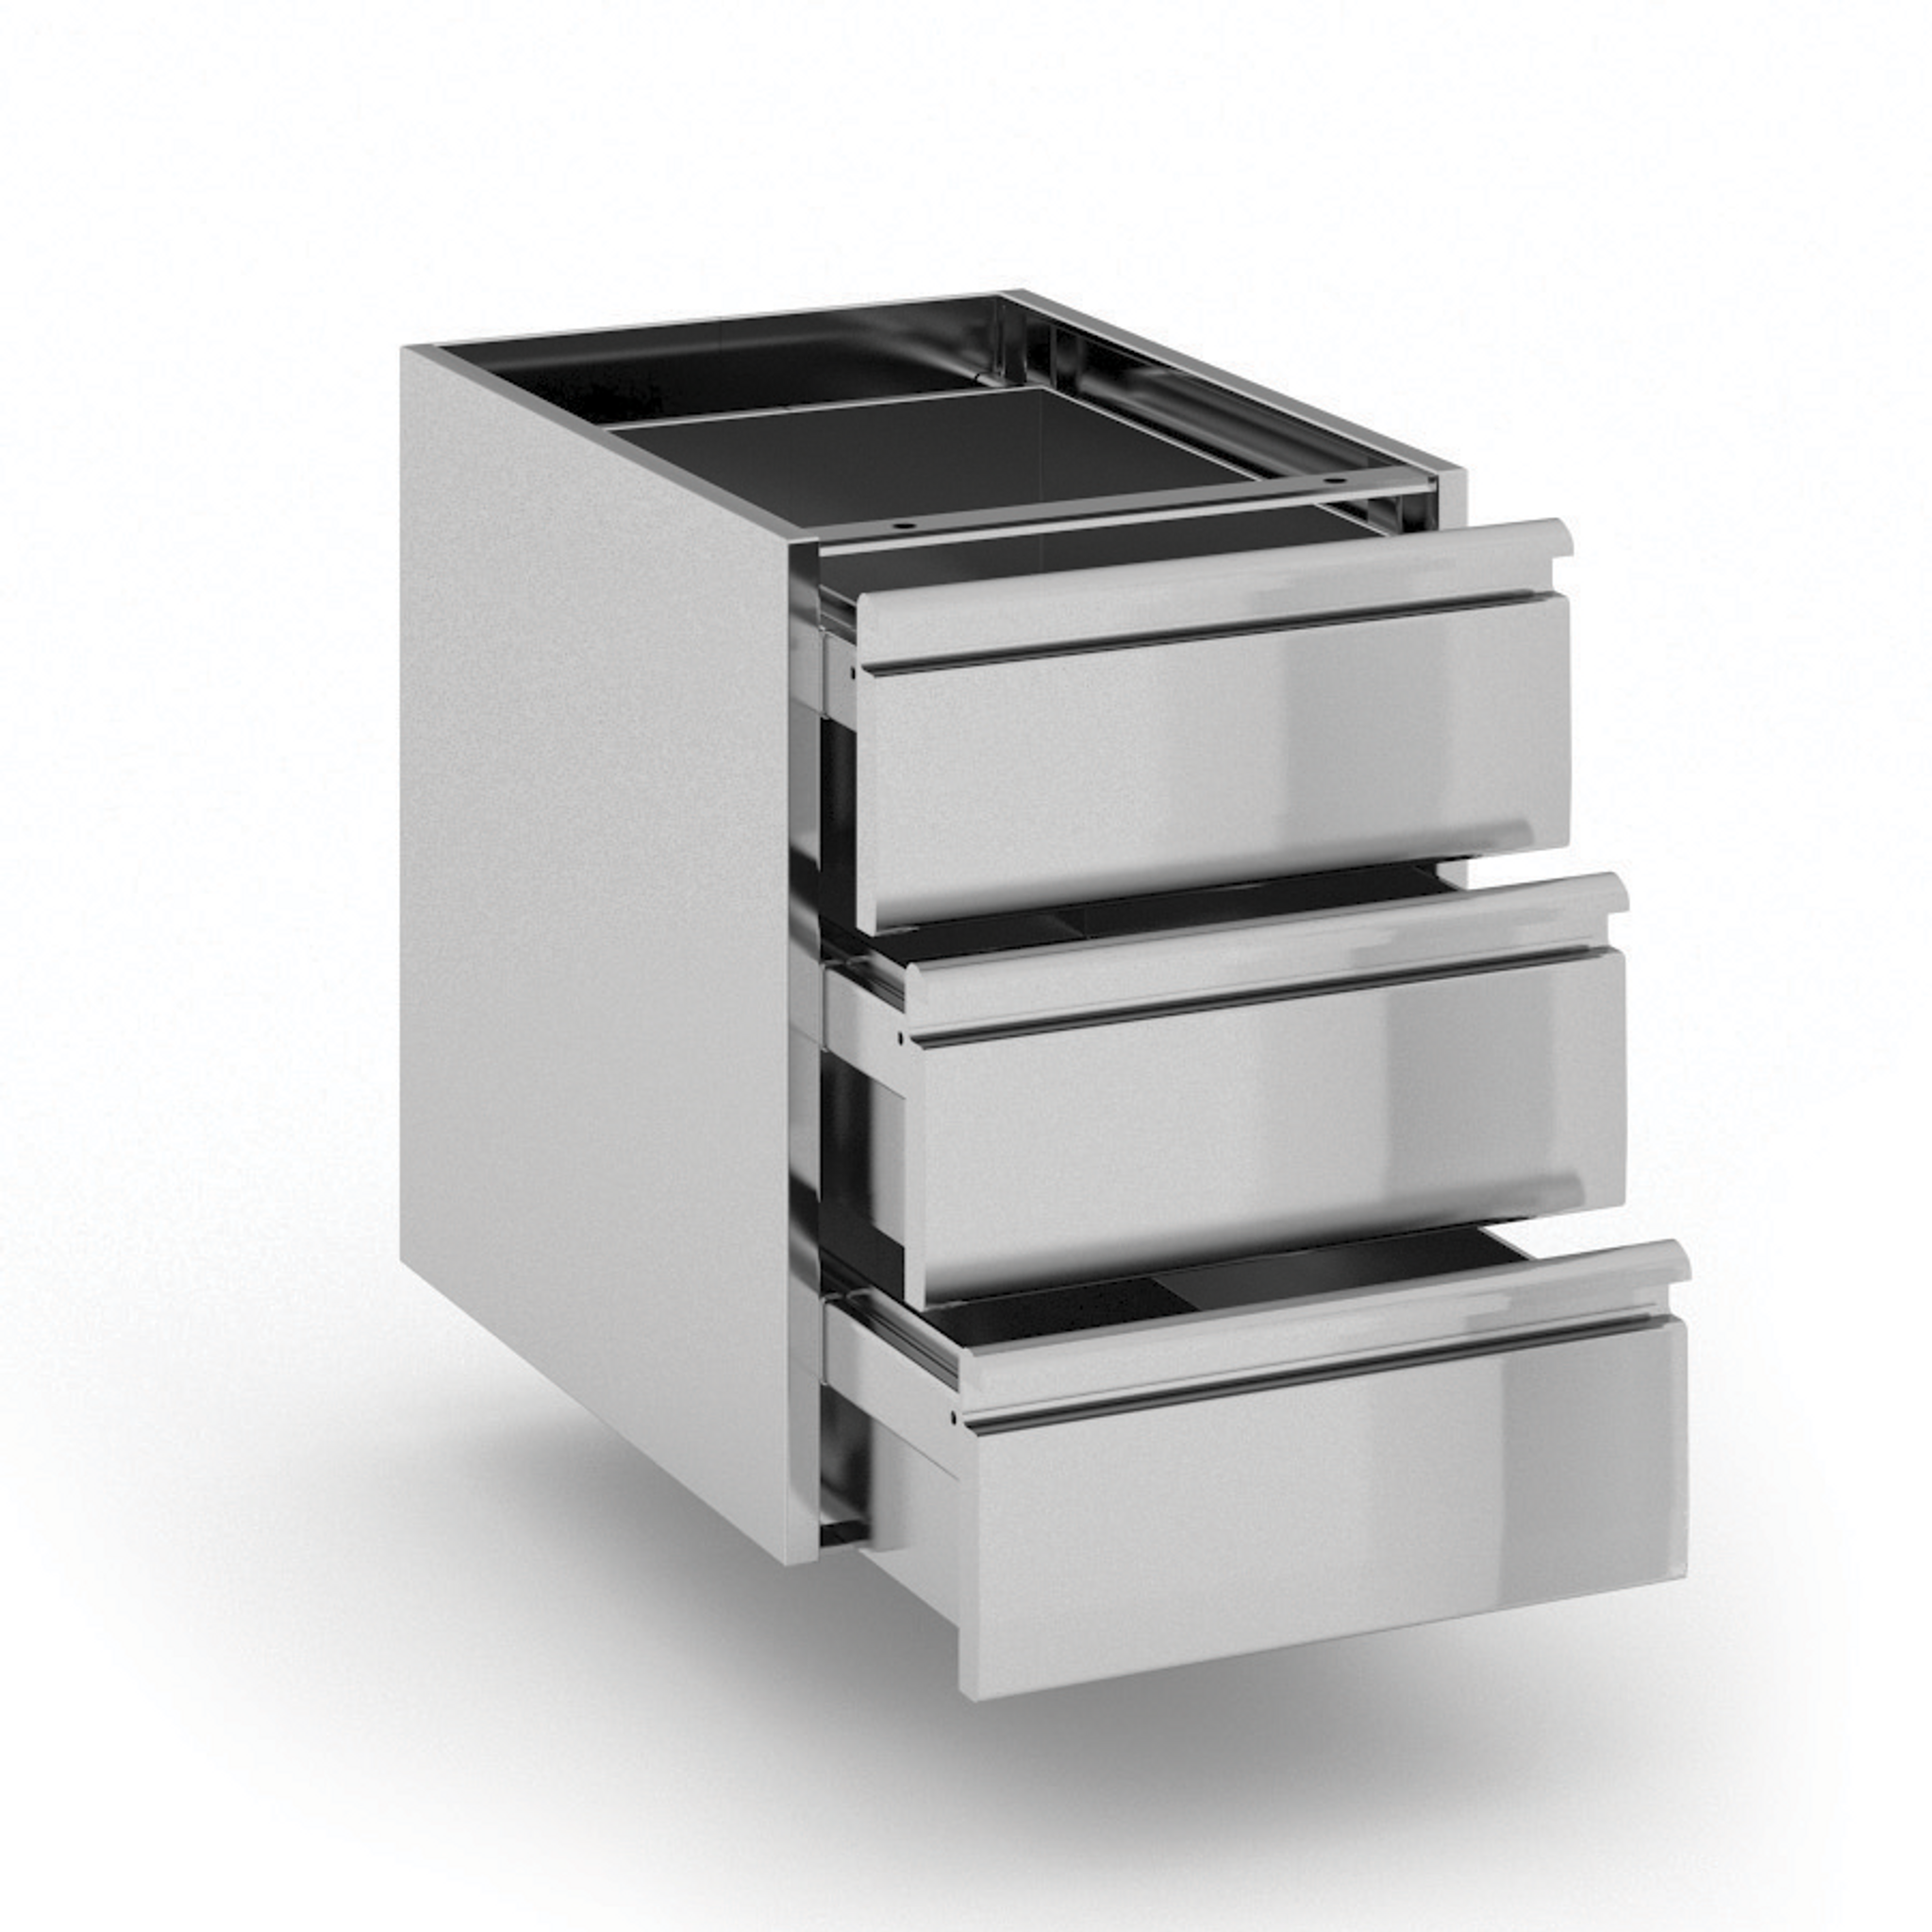 Pojemnik z szufladami ze stali nierdzewnej, 3 szuflady, 400 x 560 x 528 mm